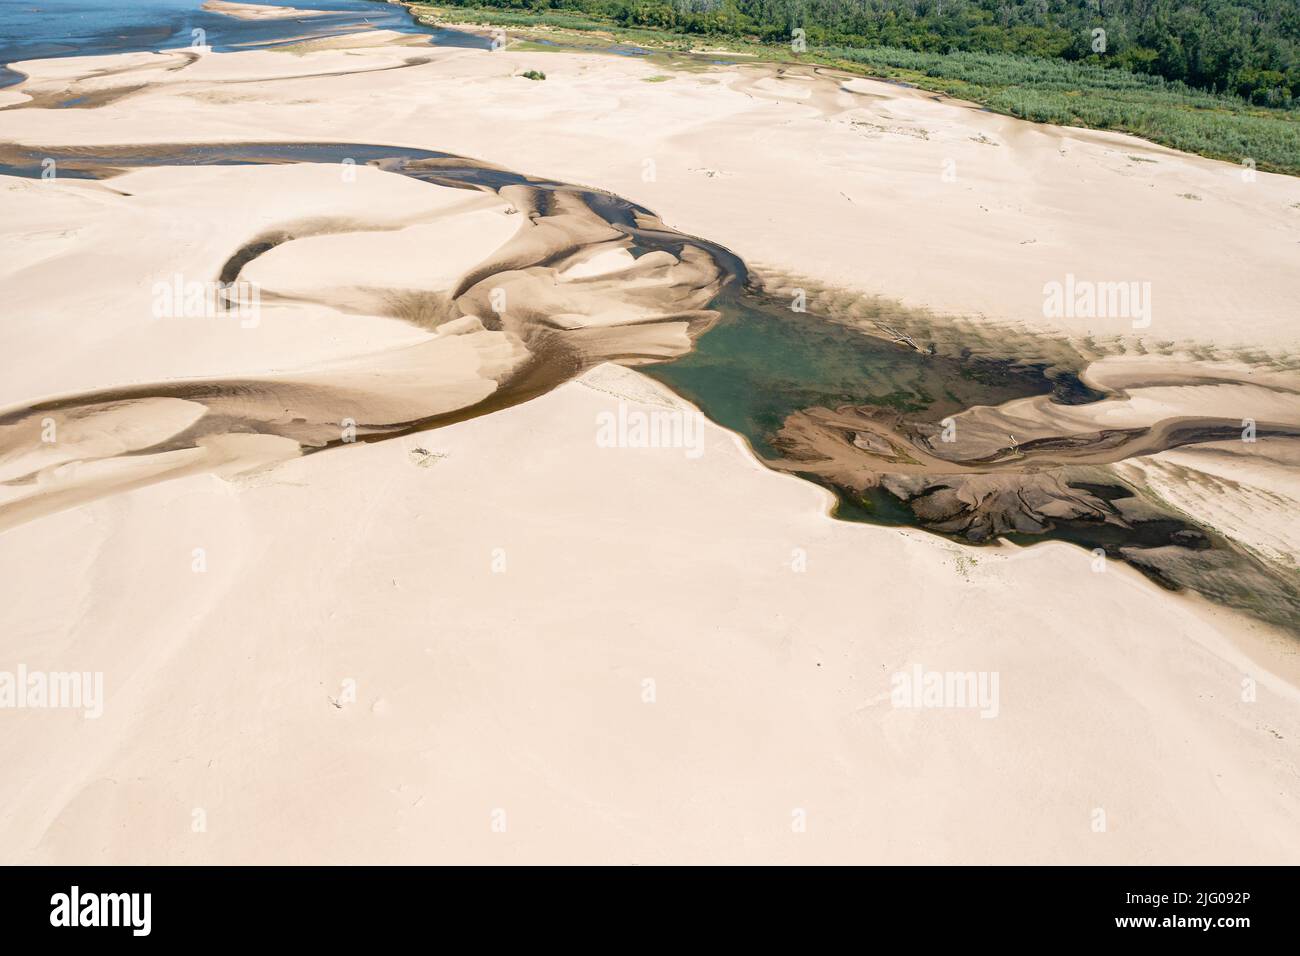 Basso livello d'acqua nel fiume Vistula, effetto della siccità vista dal punto di vista dell'occhio dell'uccello Foto Stock